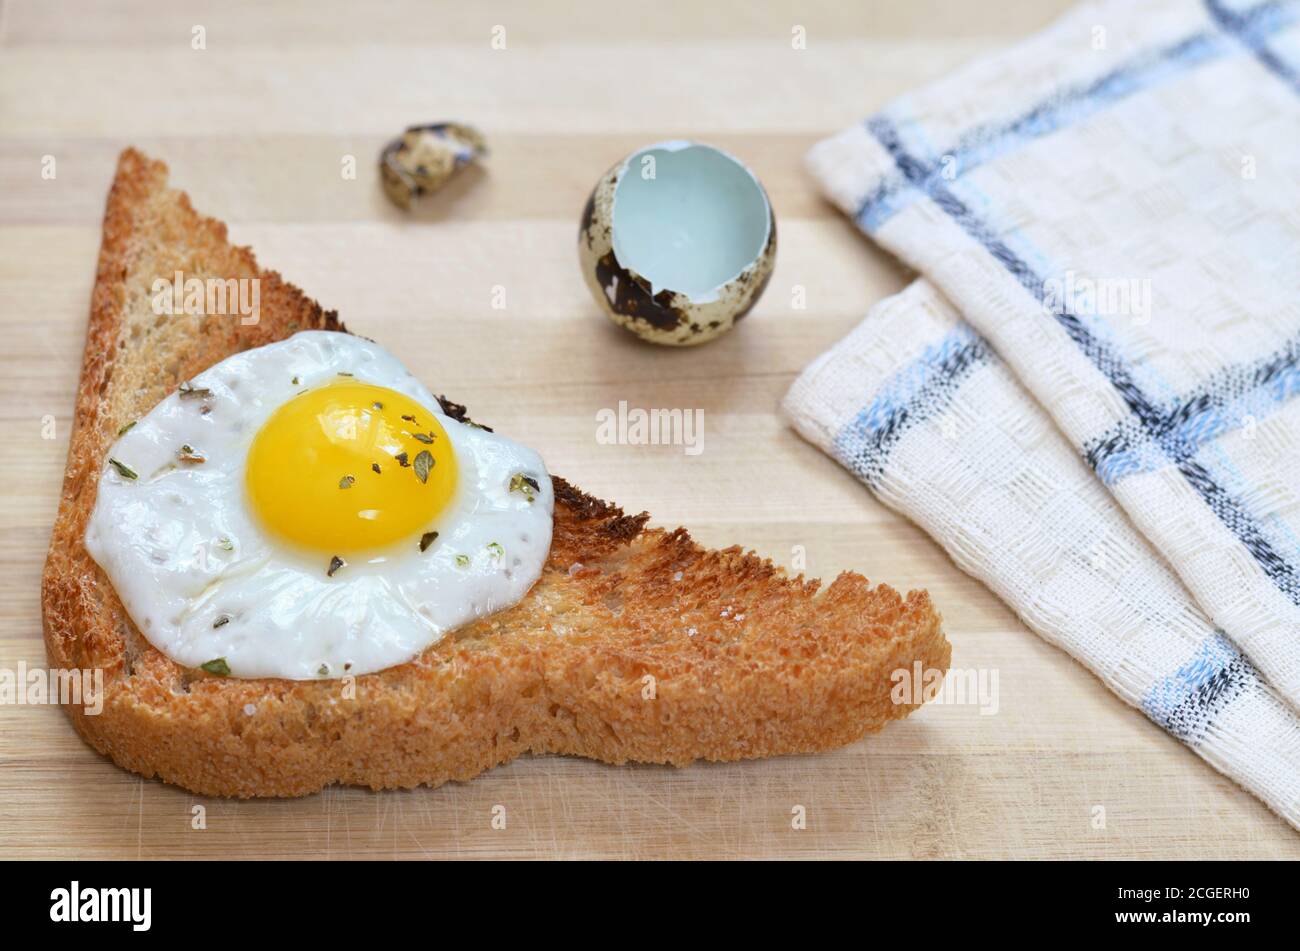 Geröstetes Brot mit gebratenem Wachtelei auf einem hölzernen Schneidebrett mit Küchentuch und Eierschalen, selektiver Fokus. Gesundes Frühstück. Stockfoto